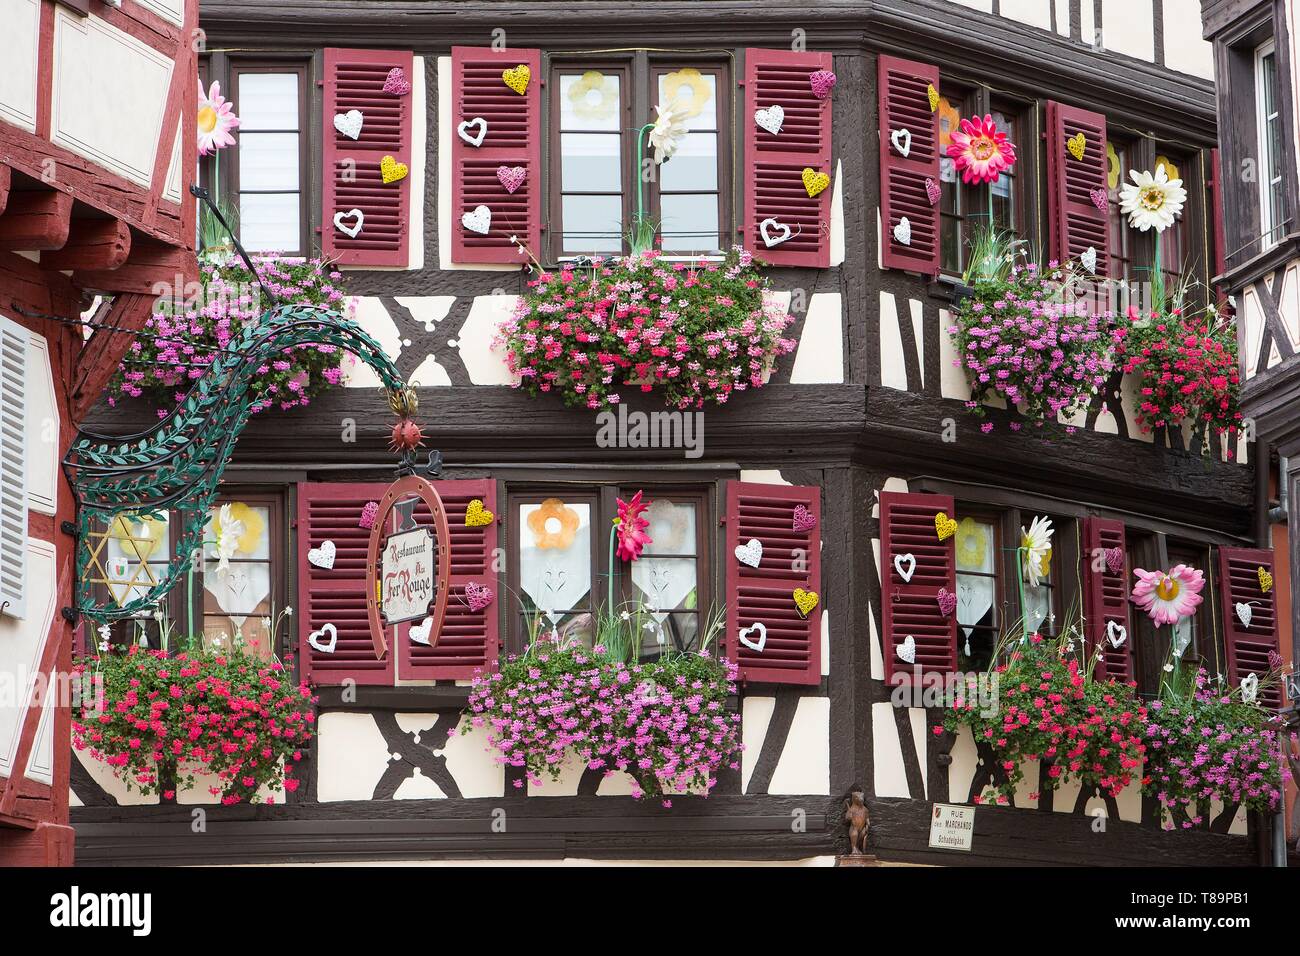 Francia, Haut Rhin, Route des Vins d'Alsace, Colmar, facciata di una casa tradizionale che ospita il negozio Aux Vieux Pignons situato in Marchands Street Foto Stock